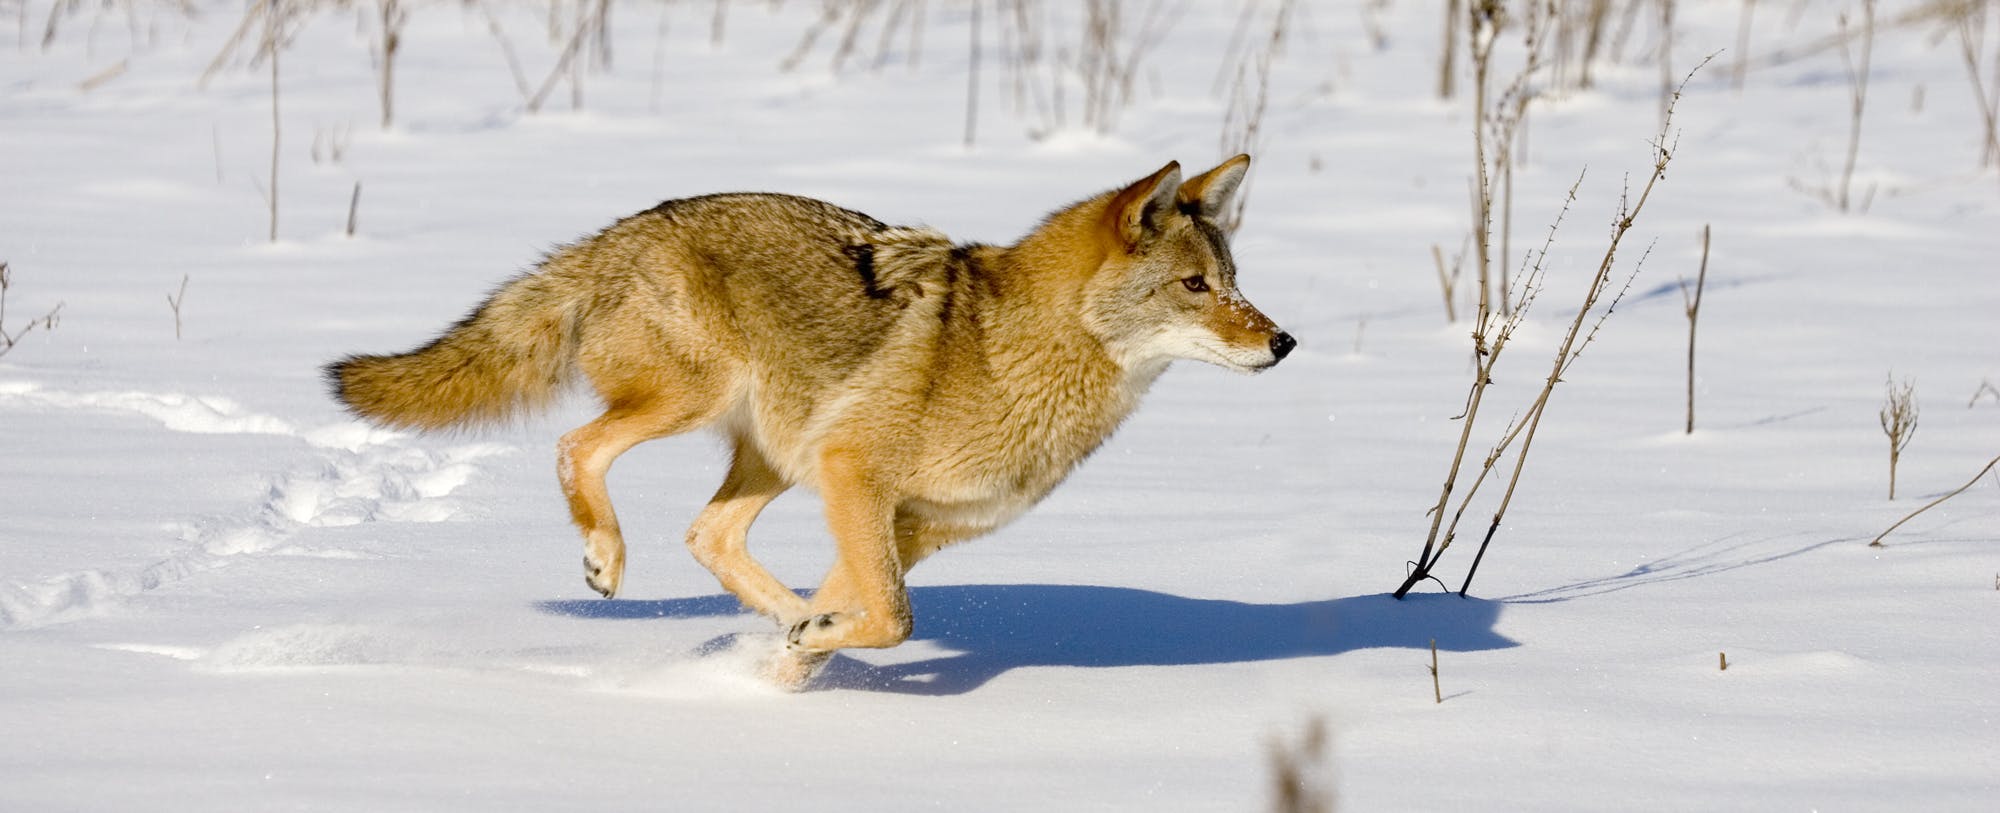 The Coyote: Friend Or Foe?